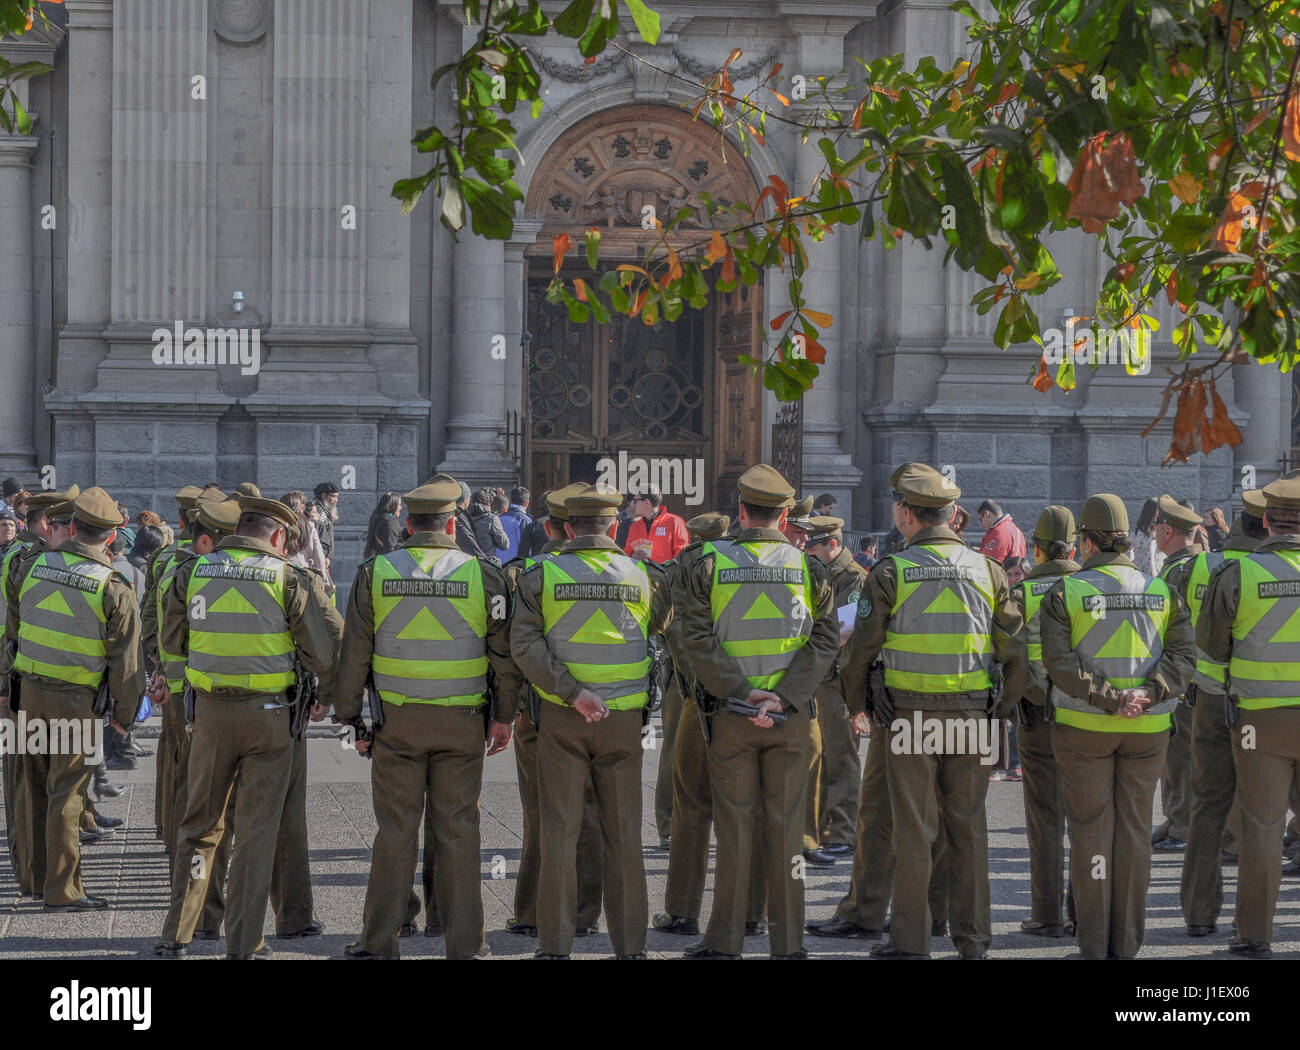 SANTIAGO DE CHILE, CHILI - le 23 novembre 2015 : les agents de police, carabiniers sont visibles à l'extérieur de la Cathédrale Métropolitaine, la Place Principale Plaza de Armas, S Banque D'Images